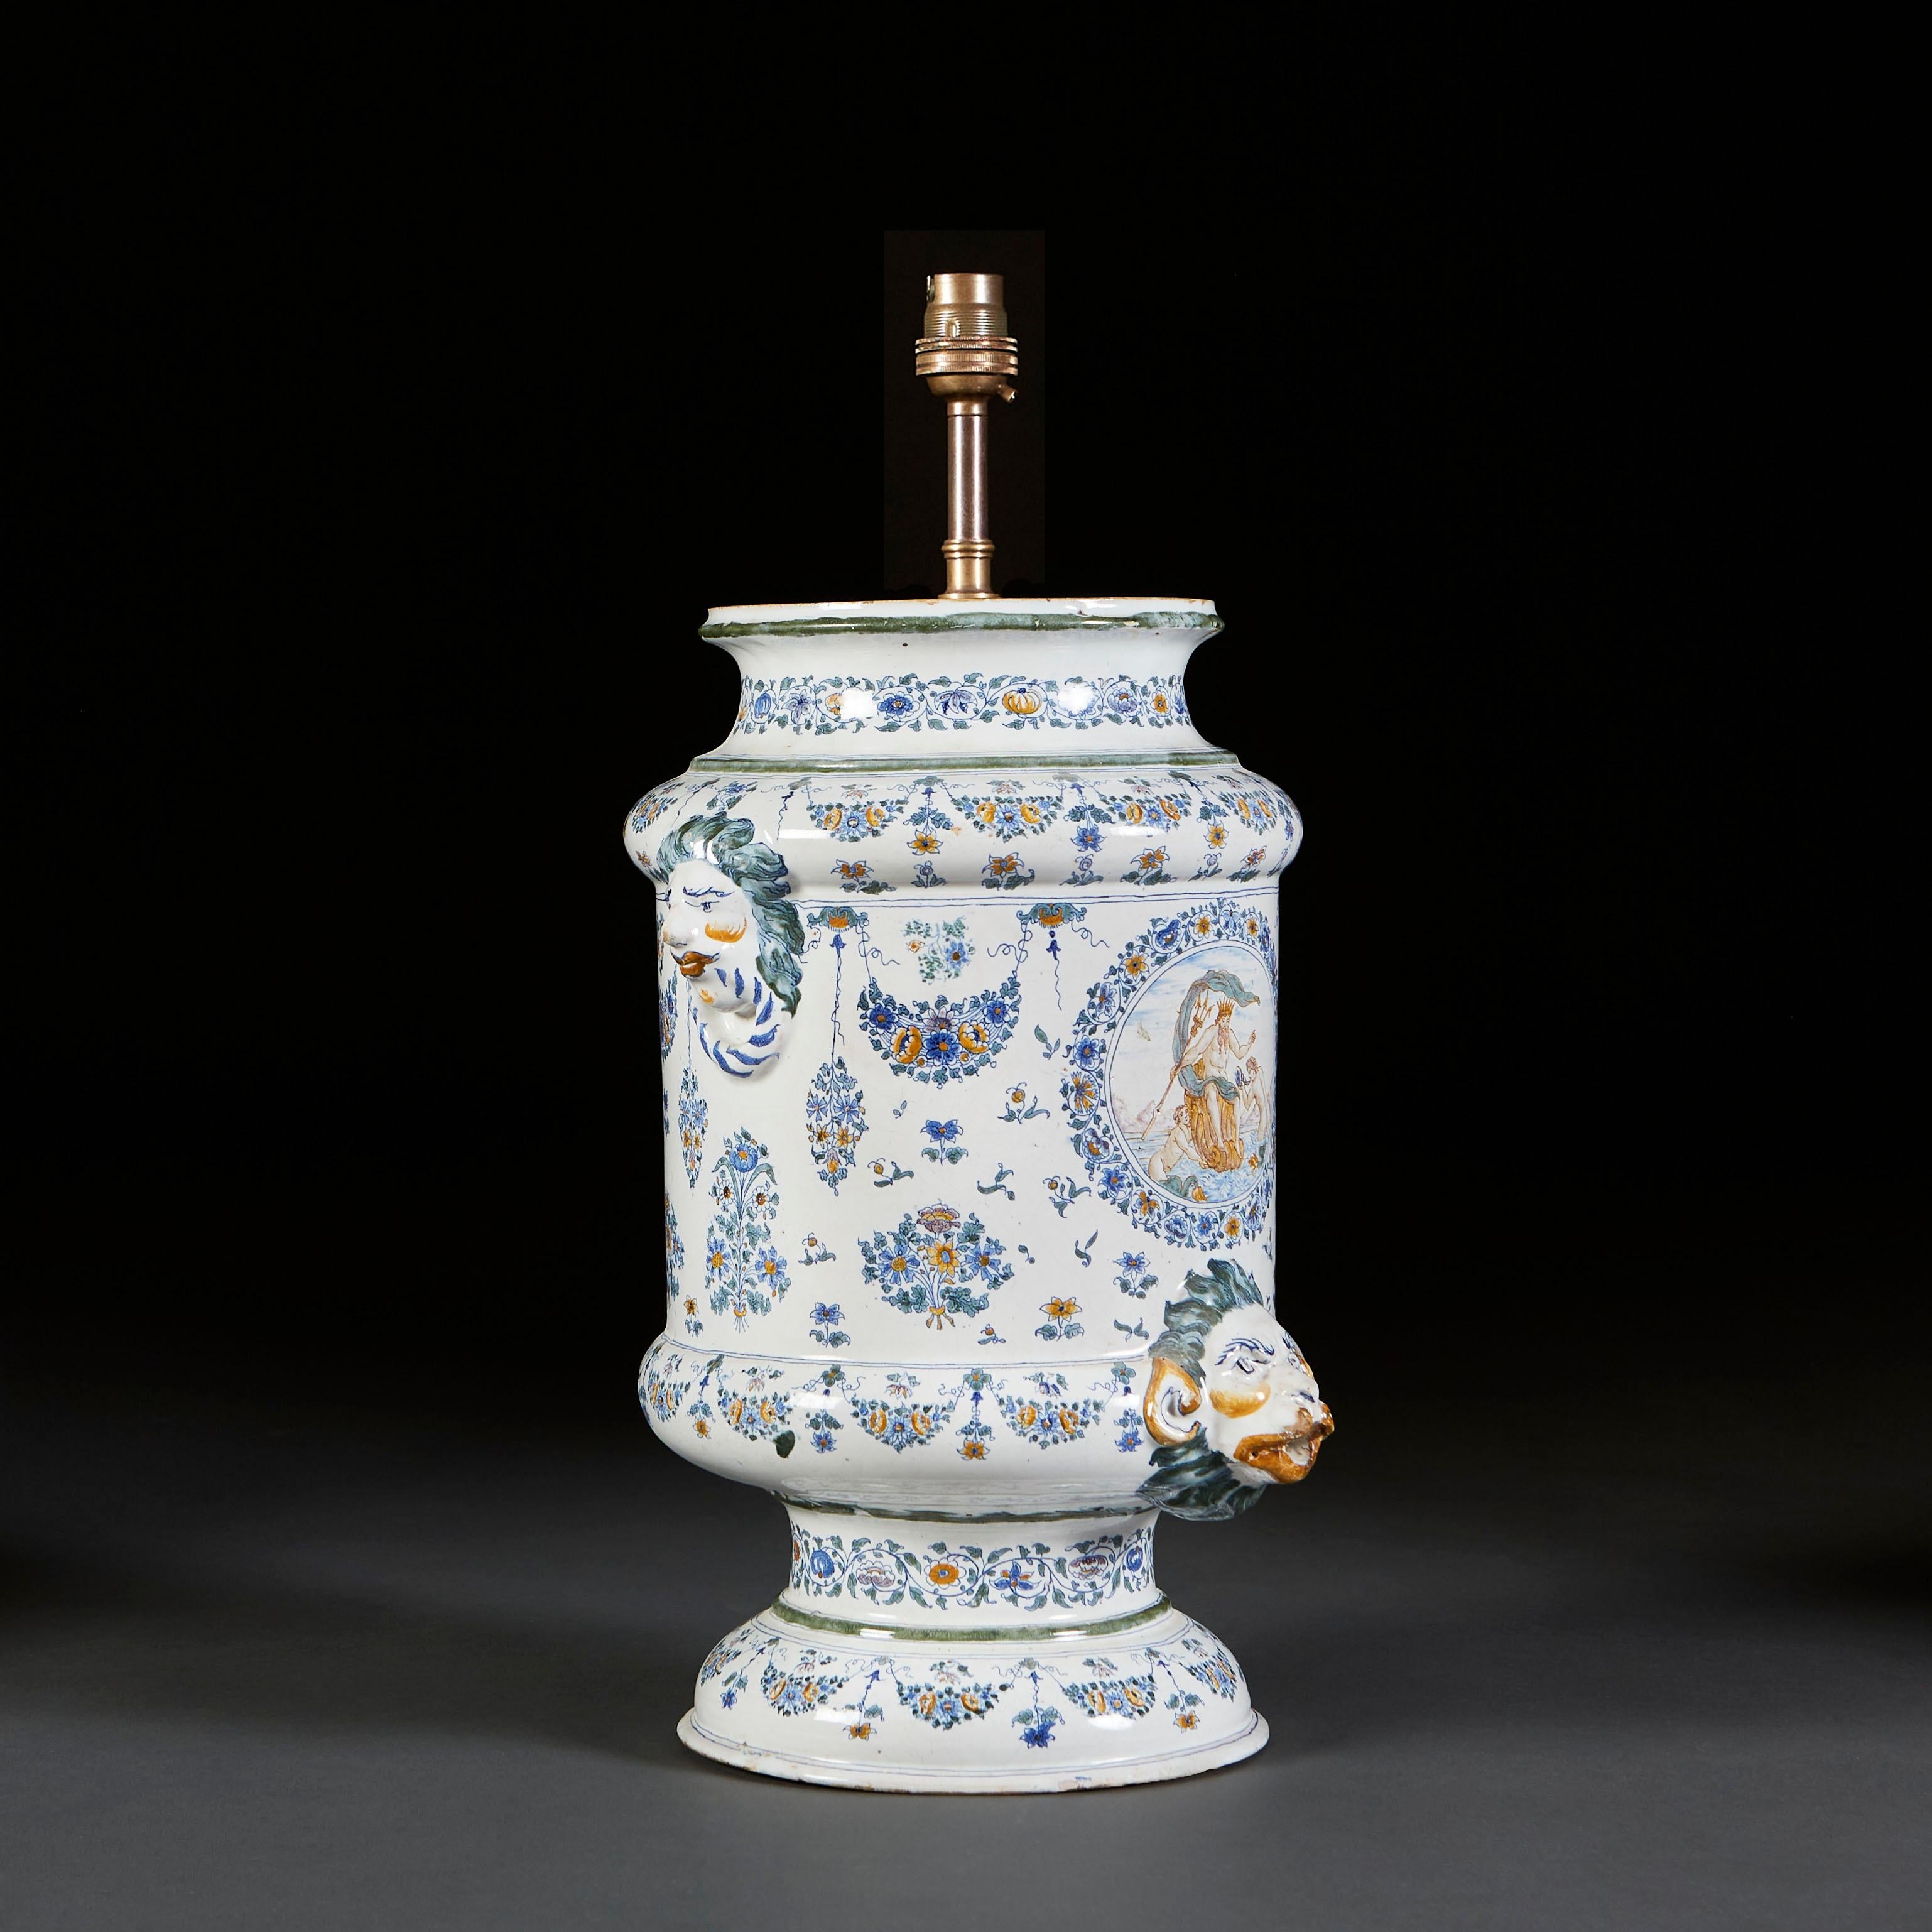 Eine feine, großformatige, zinnglasierte Vase mit zentraler Kartusche, die Neptun mit seinem Dreizack darstellt, durchgehend mit Blattdekor, mit Henkeln aus Löwenmasken, auf einem gedrehten runden Fuß, jetzt als Lampe.

Derzeit für das Vereinigte